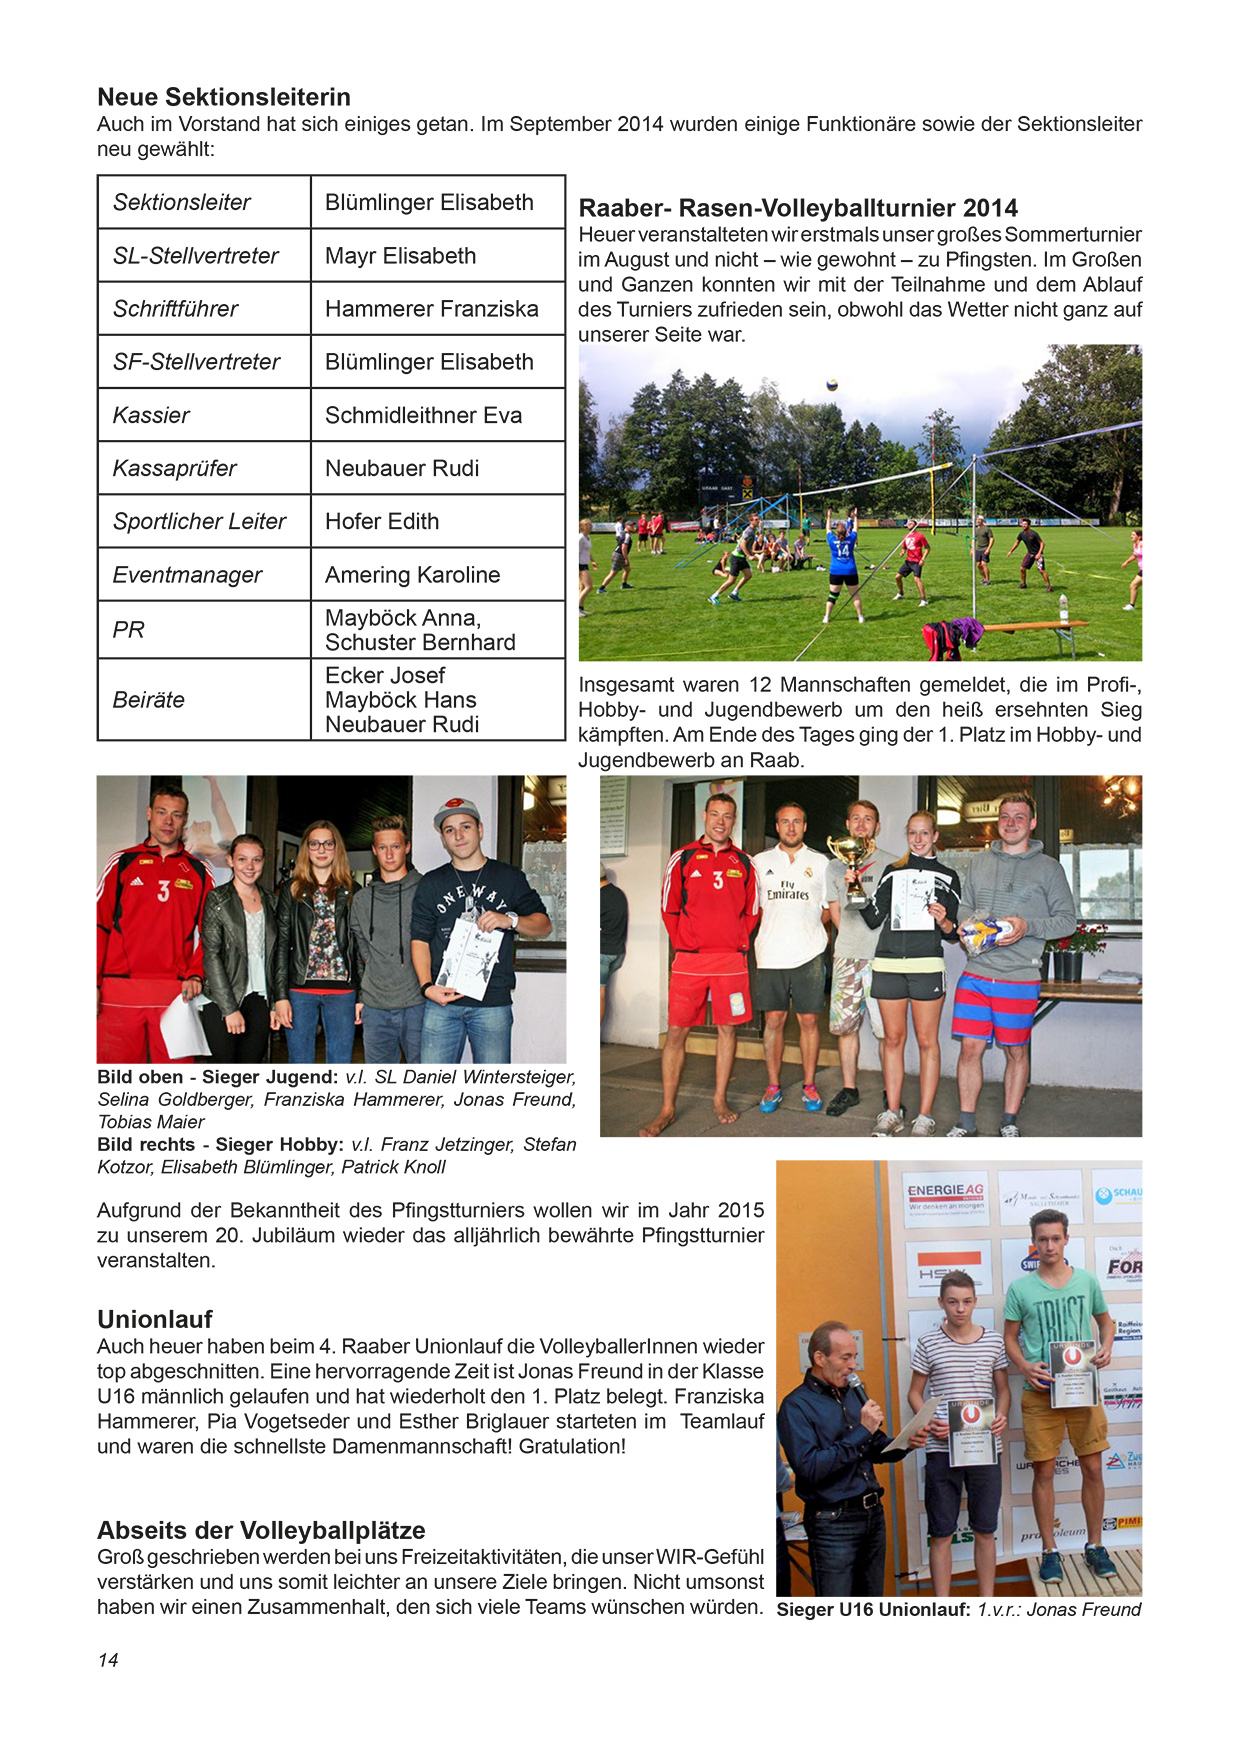 Unionzeitung 2014 - Seite 14